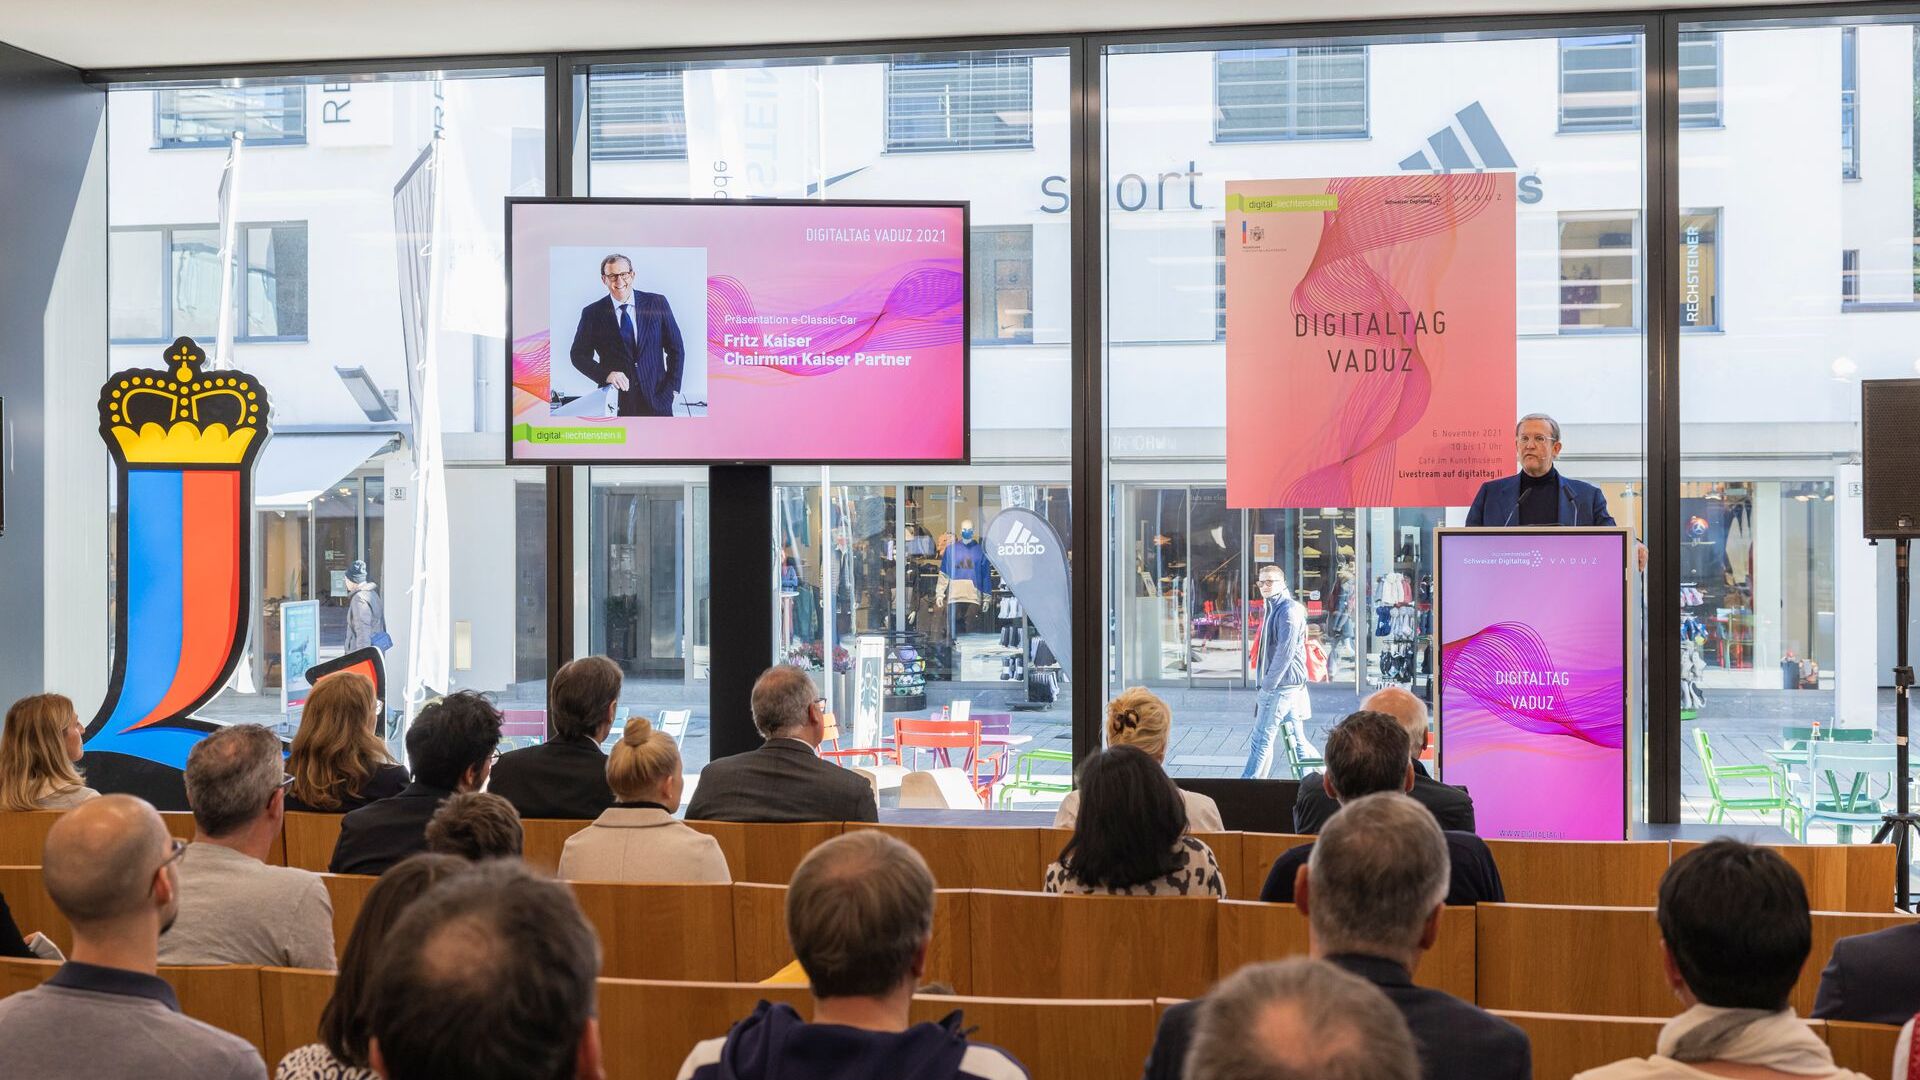 Le "Digitaltag Vaduz" a été accueilli par le Kunstmuseum de la capitale de la Principauté de Liechtenstein le samedi 6 novembre 2021 : le discours de Fritz Kaiser, Président et propriétaire de Kaiser Partner